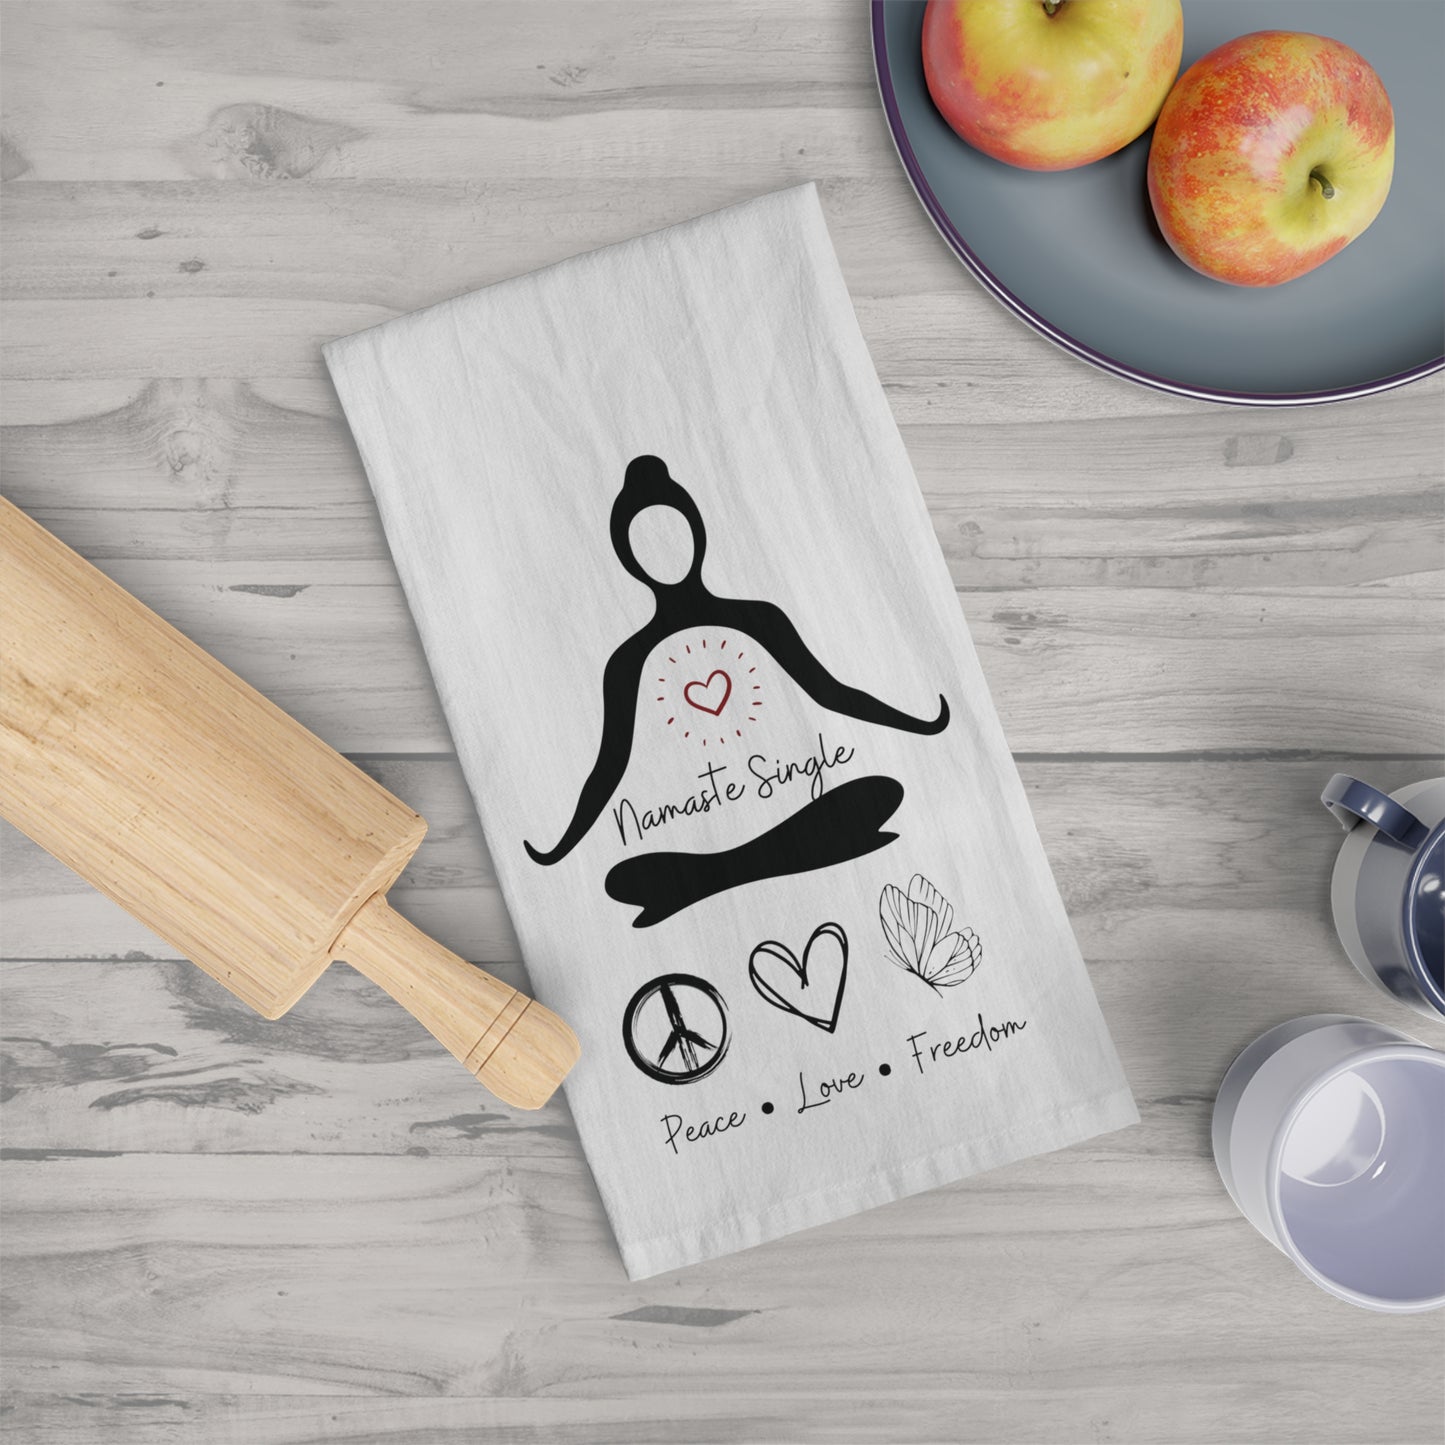 Namaste Single Tea Towel